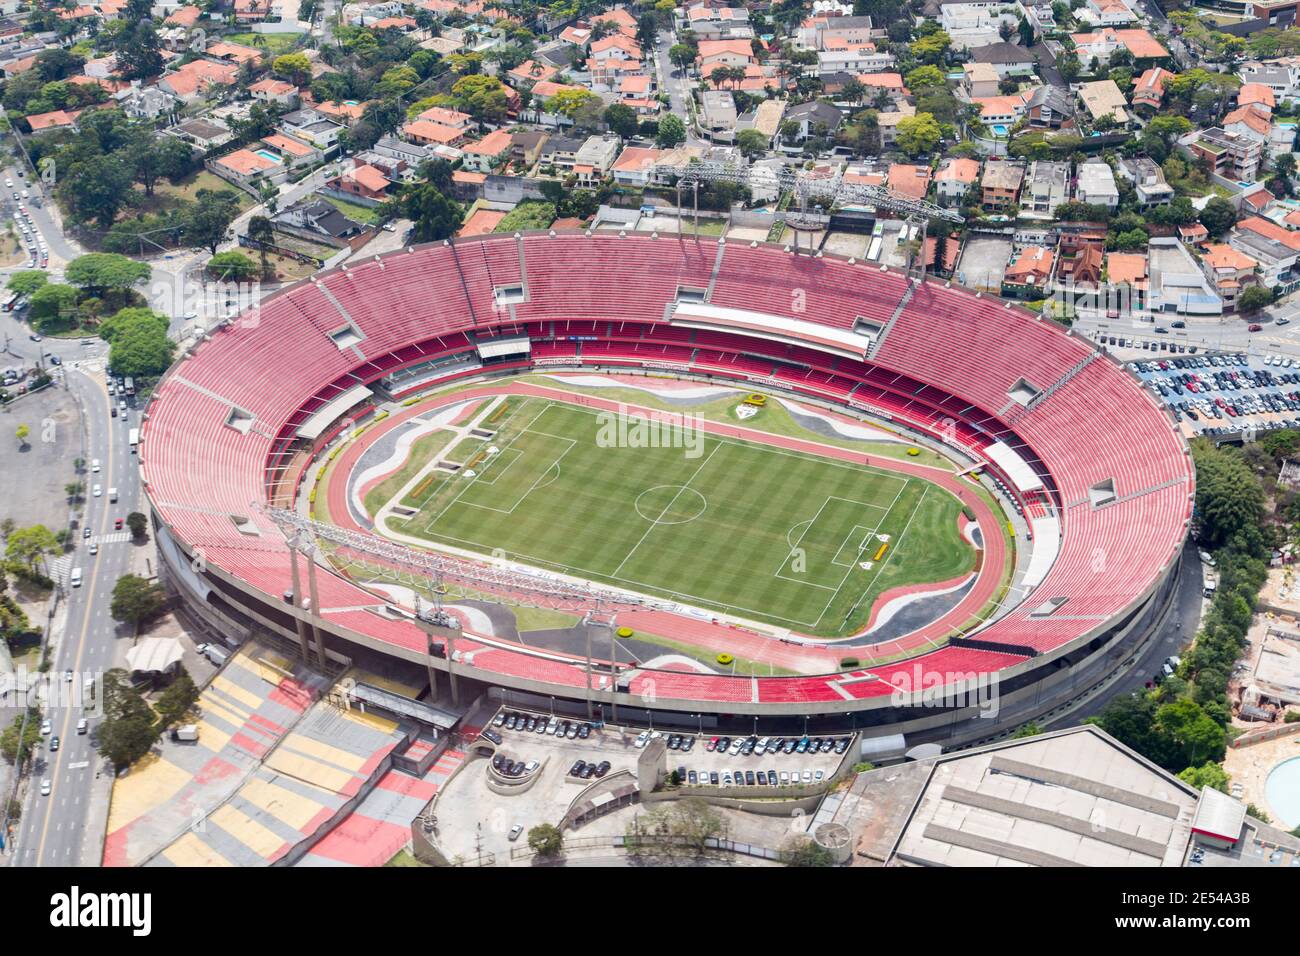 Mineirão Stadium in São Luiz - Tours and Activities